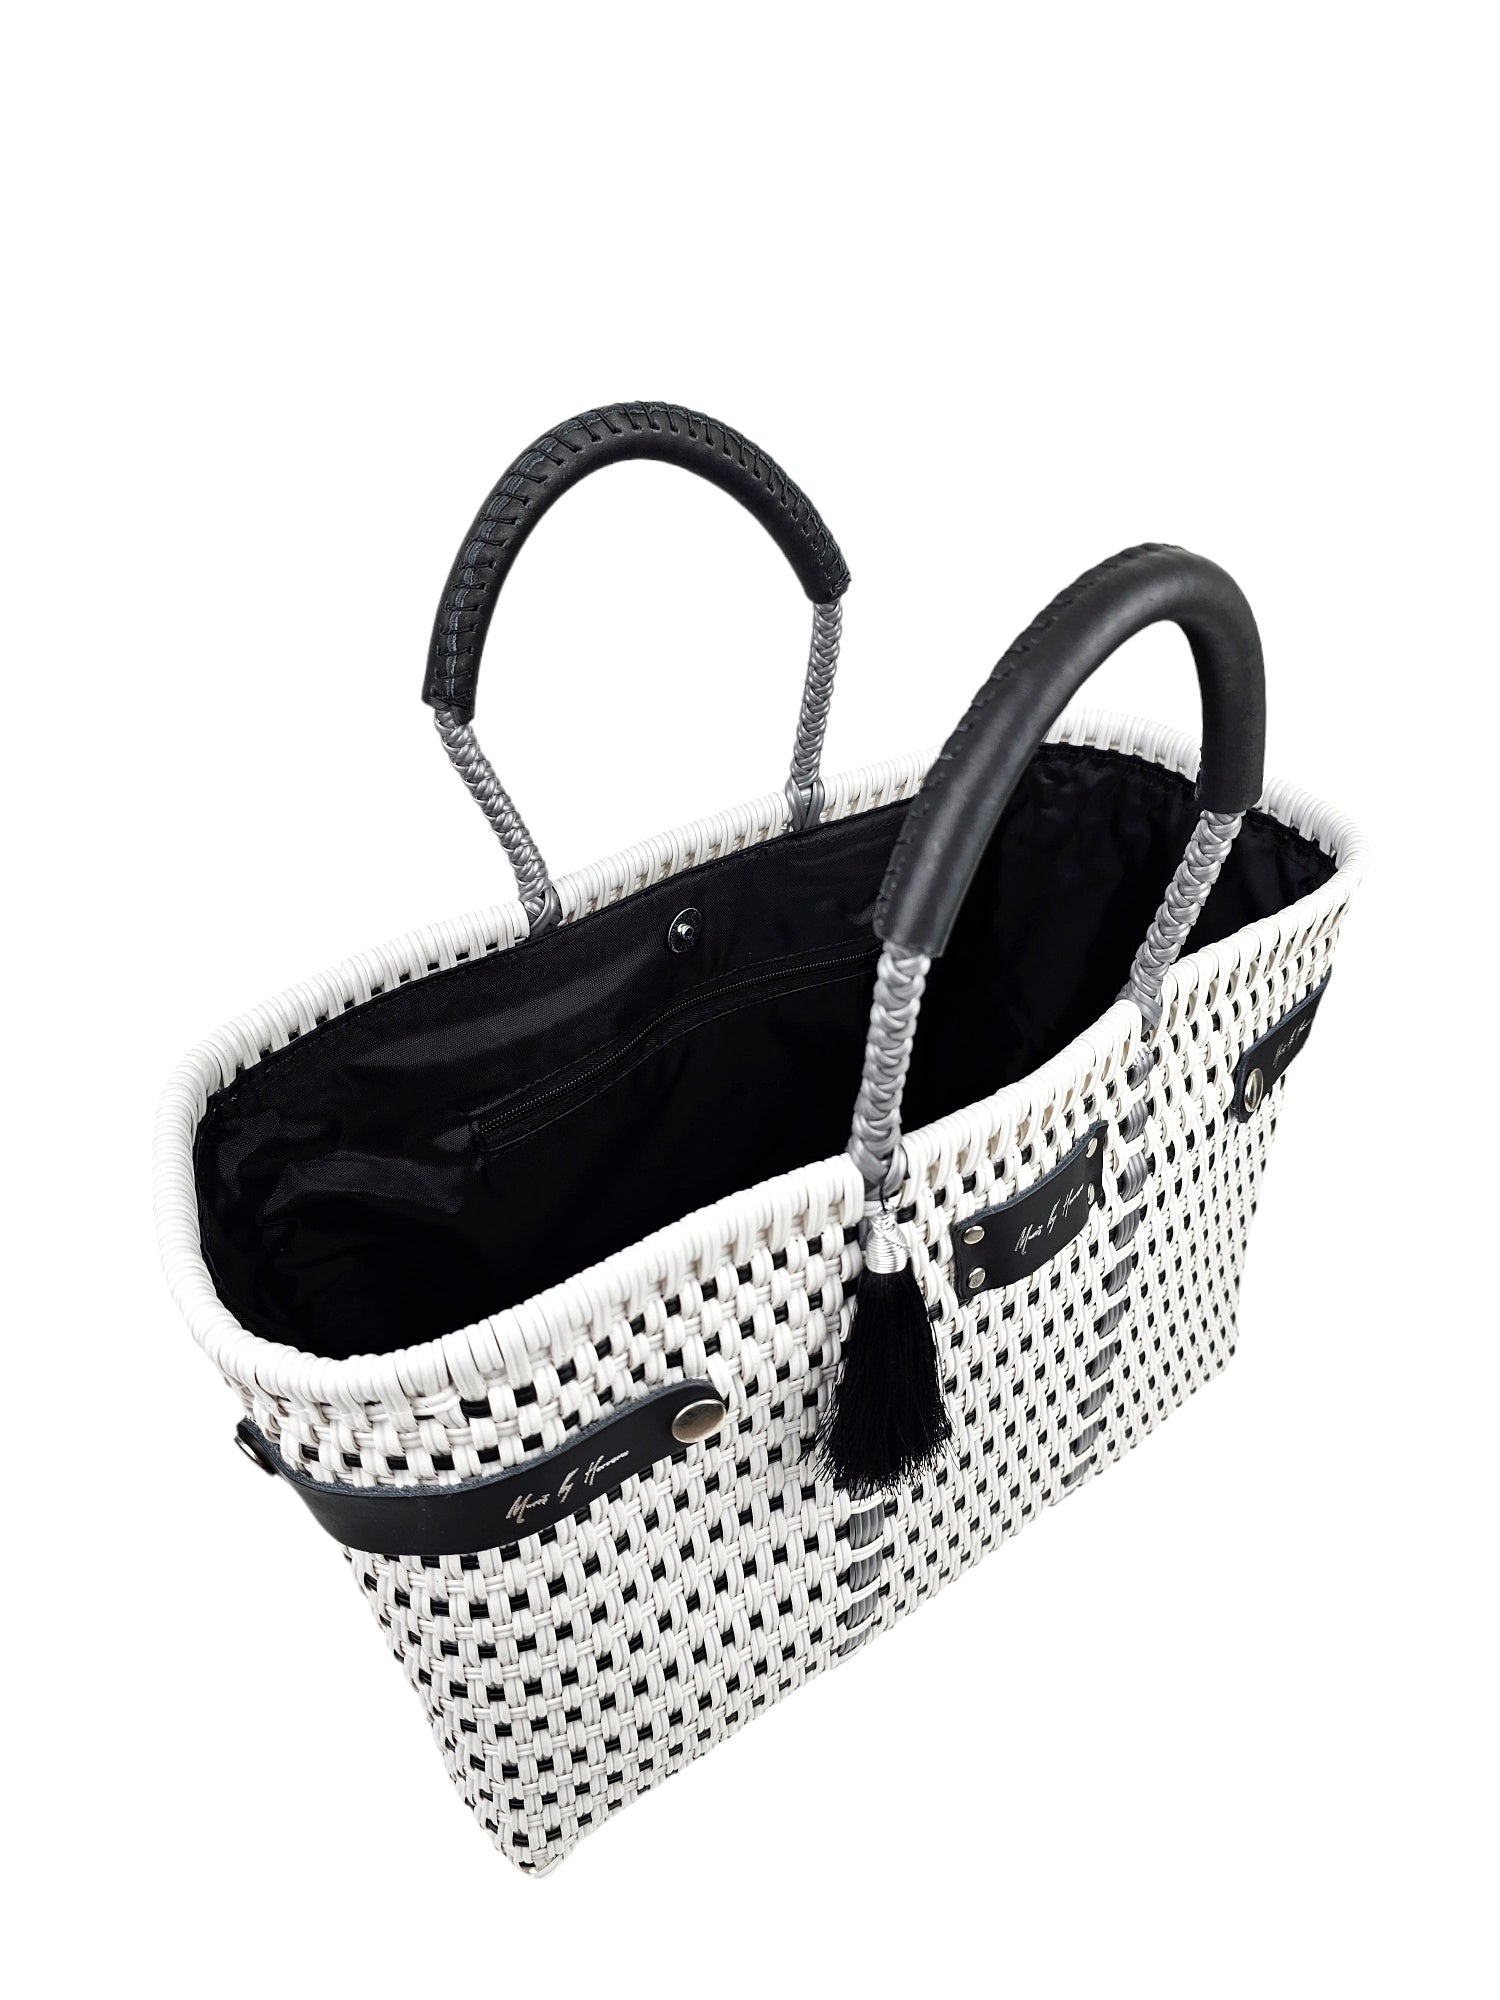 Less Pollution Convertible Handbag - Silver White Luxe